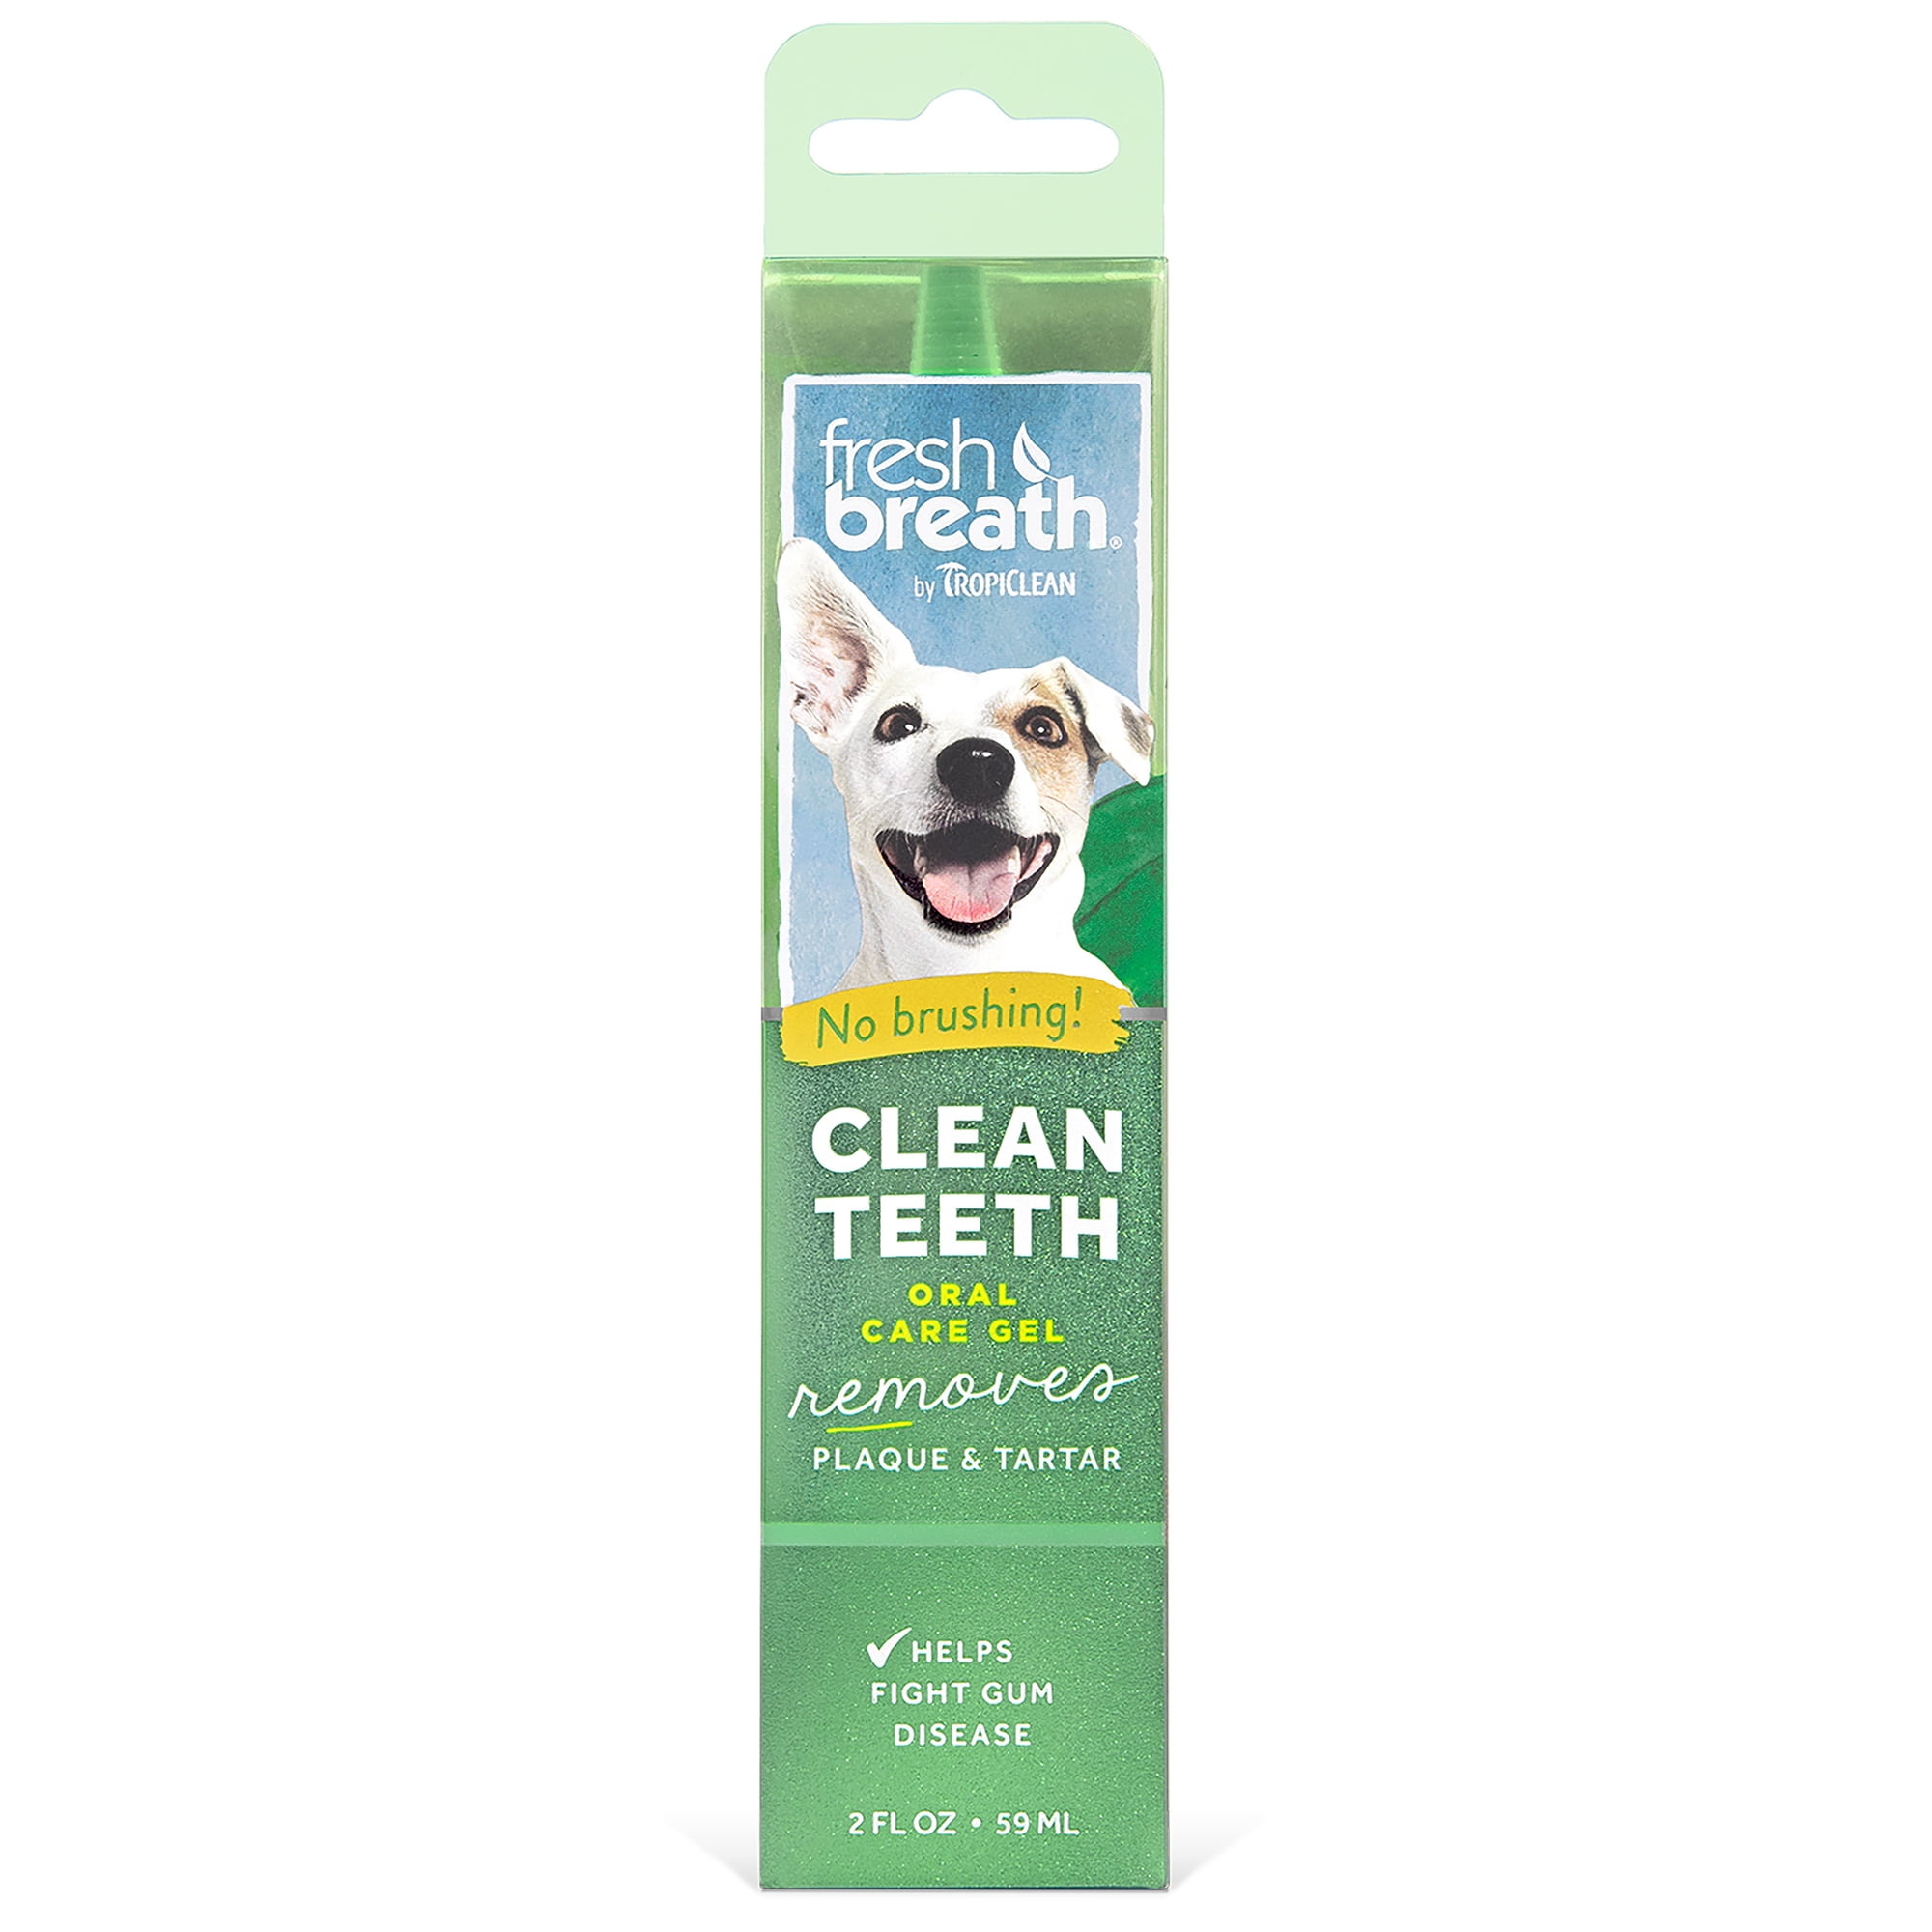 Купить для чистки зубов собаке. Зубной гель для собак Tropiclean Fresh Breath. Тропиклин гель для чистки зубов собаки. Fresh Breath для собак гель. Гель Tropiclean Fresh Breath для чистки зубов отбеливающий для собак 118 мл.